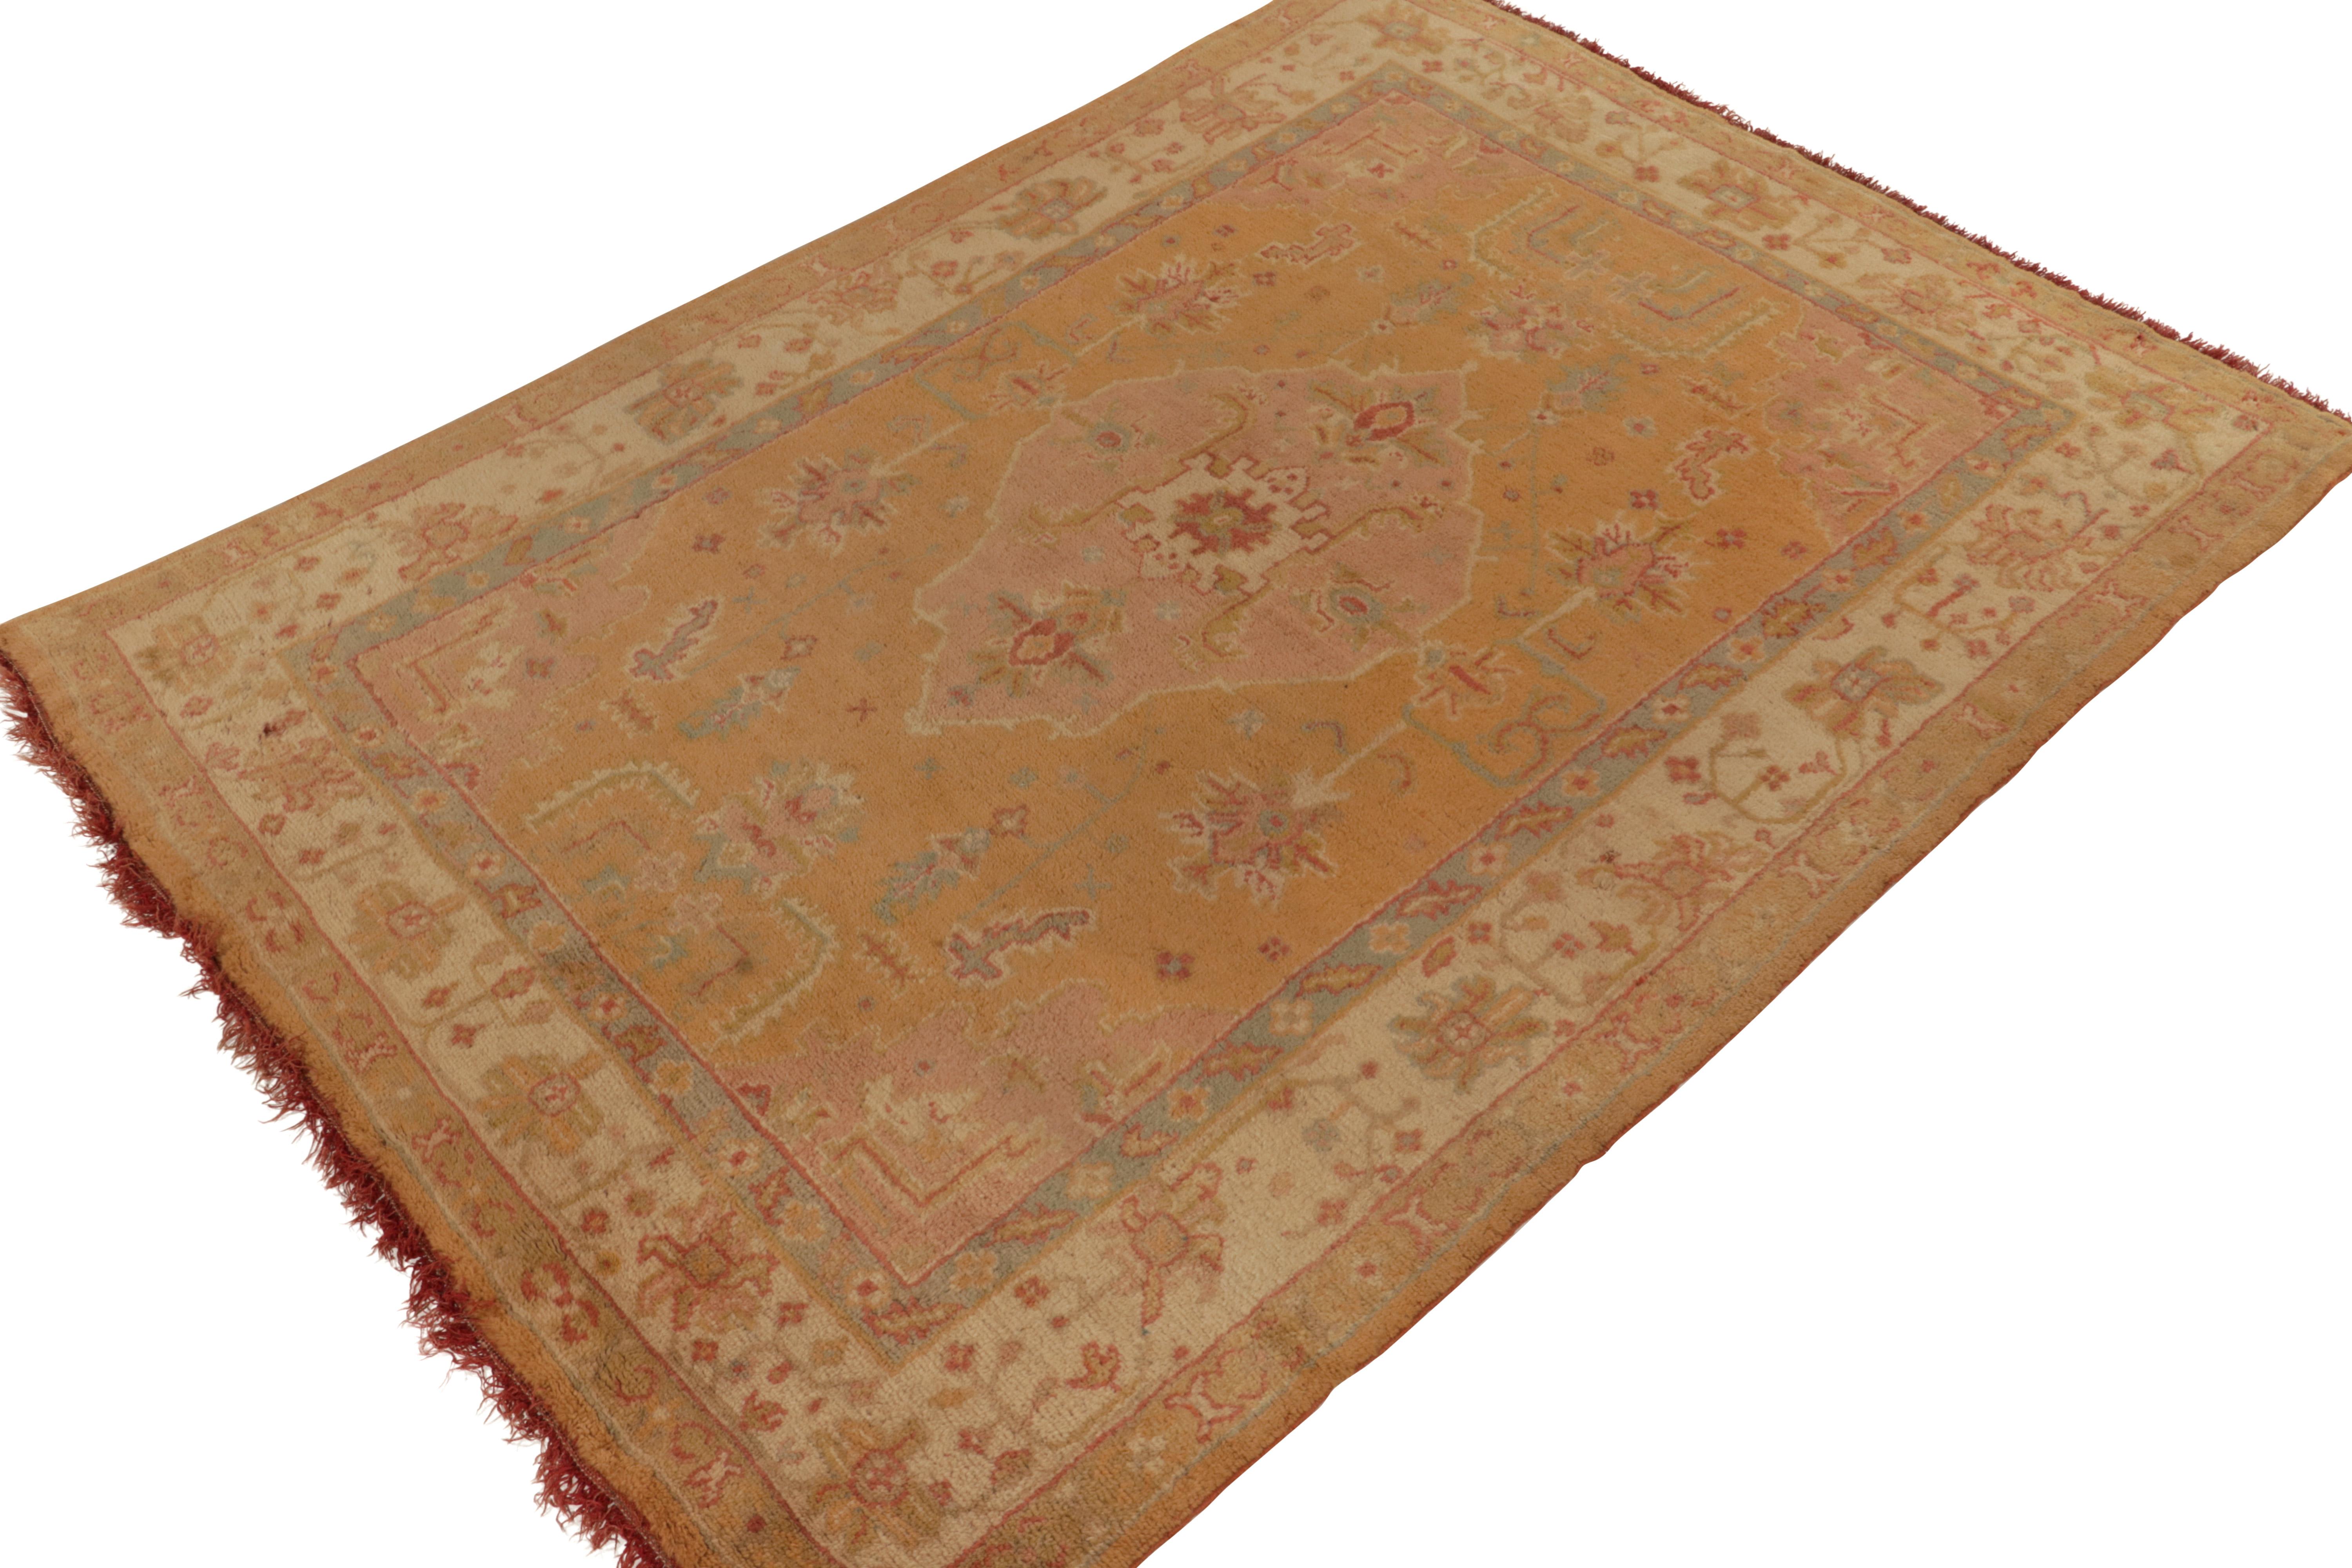 Dieser 8x11 große antike Oushak-Teppich aus handgeknüpfter Wolle (ca. 1920-1930) gehört zu den beliebtesten klassischen Kurationen von Josh Nazmiyal. 

In Anlehnung an einen der begehrtesten türkischen Stile für diese komfortablen und königlichen